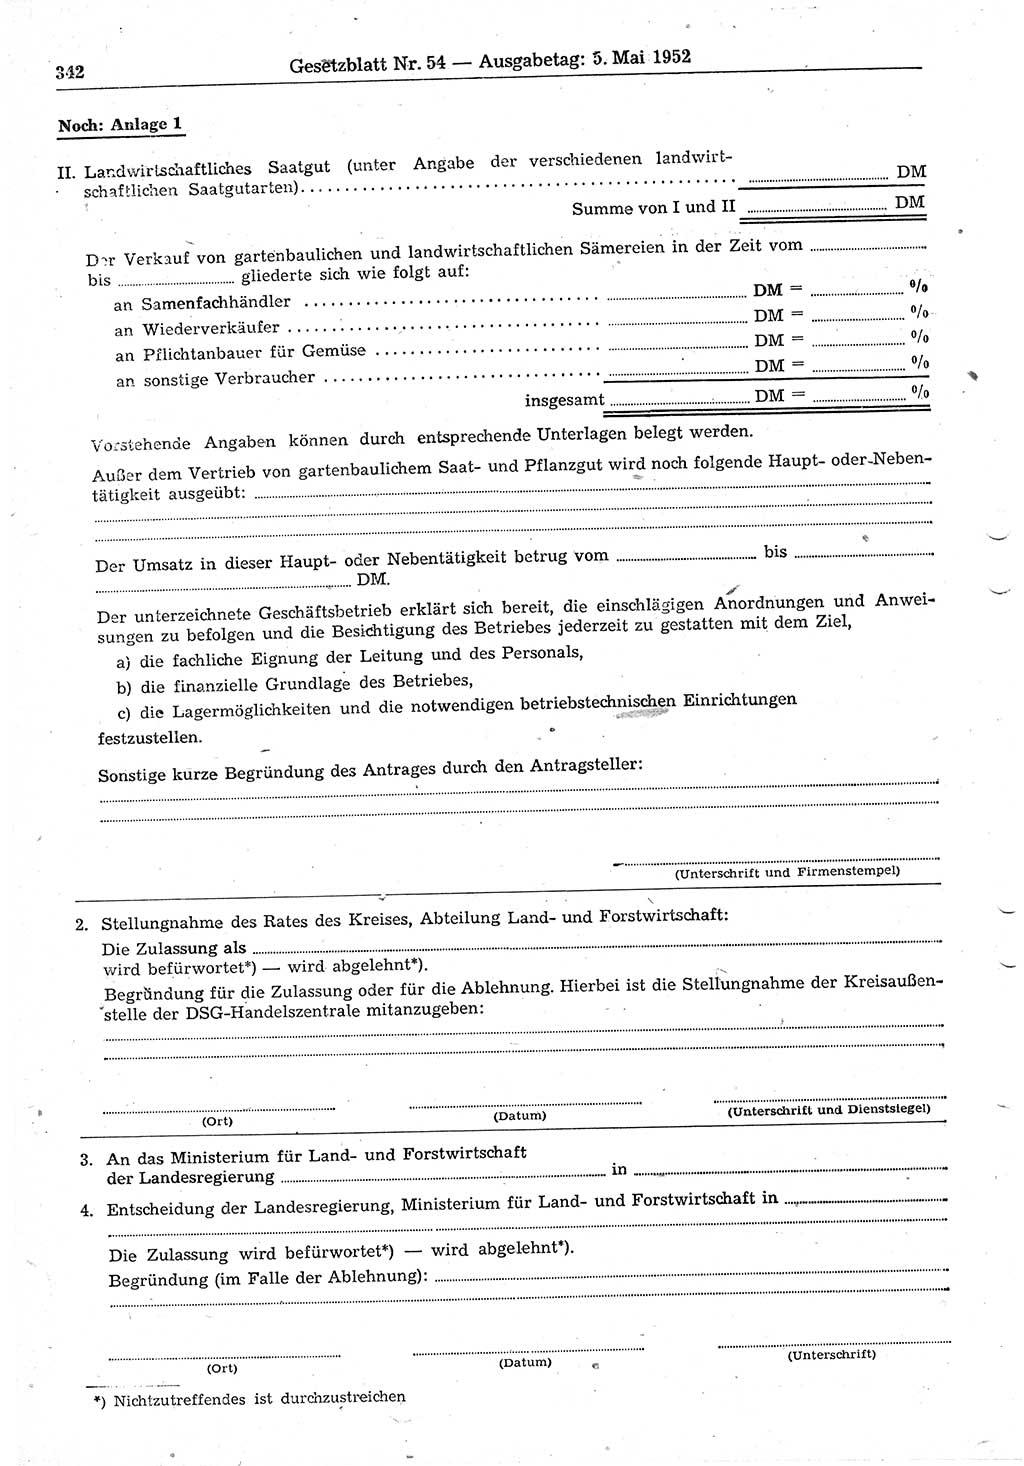 Gesetzblatt (GBl.) der Deutschen Demokratischen Republik (DDR) 1952, Seite 342 (GBl. DDR 1952, S. 342)